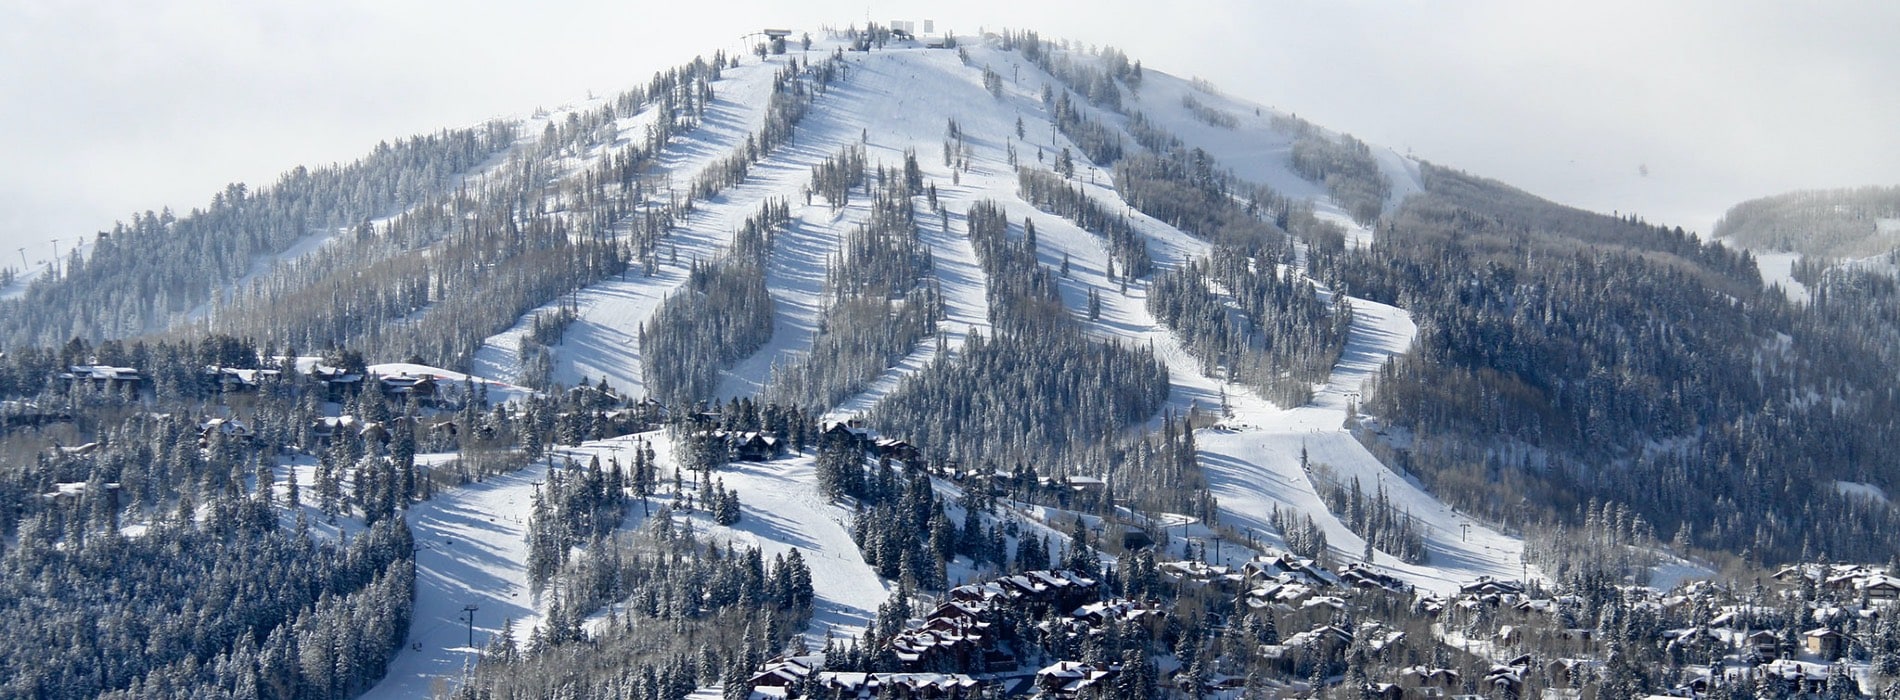 Deer Valley Resort Bald Mountain in Winter